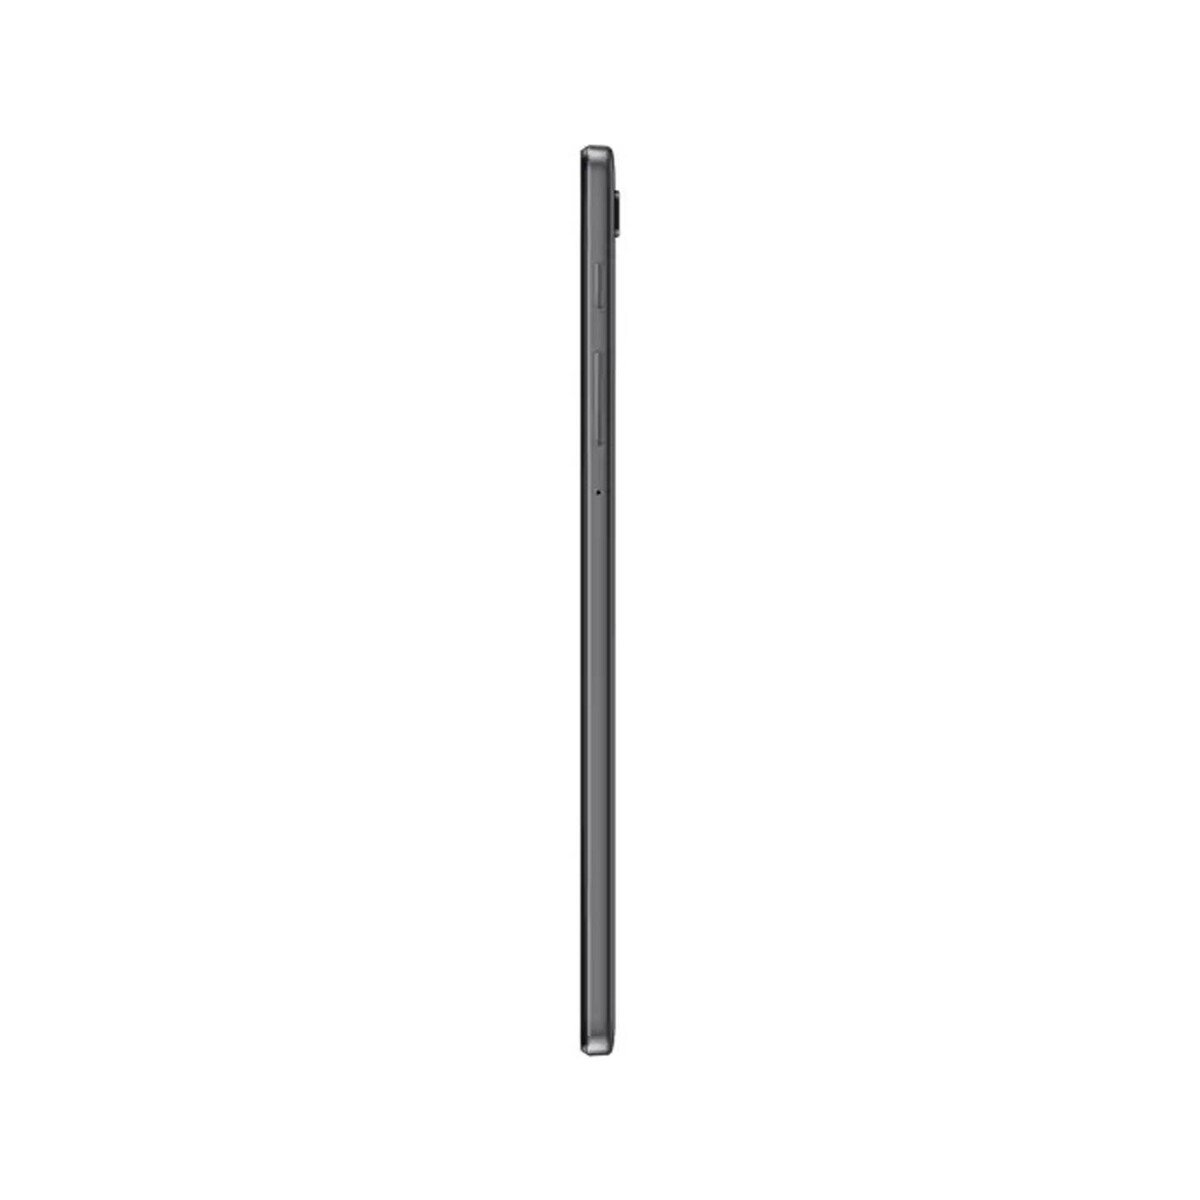 Samsung Galaxy Tab A7 Lite T220 8.7inch 32GB Wifi Gray